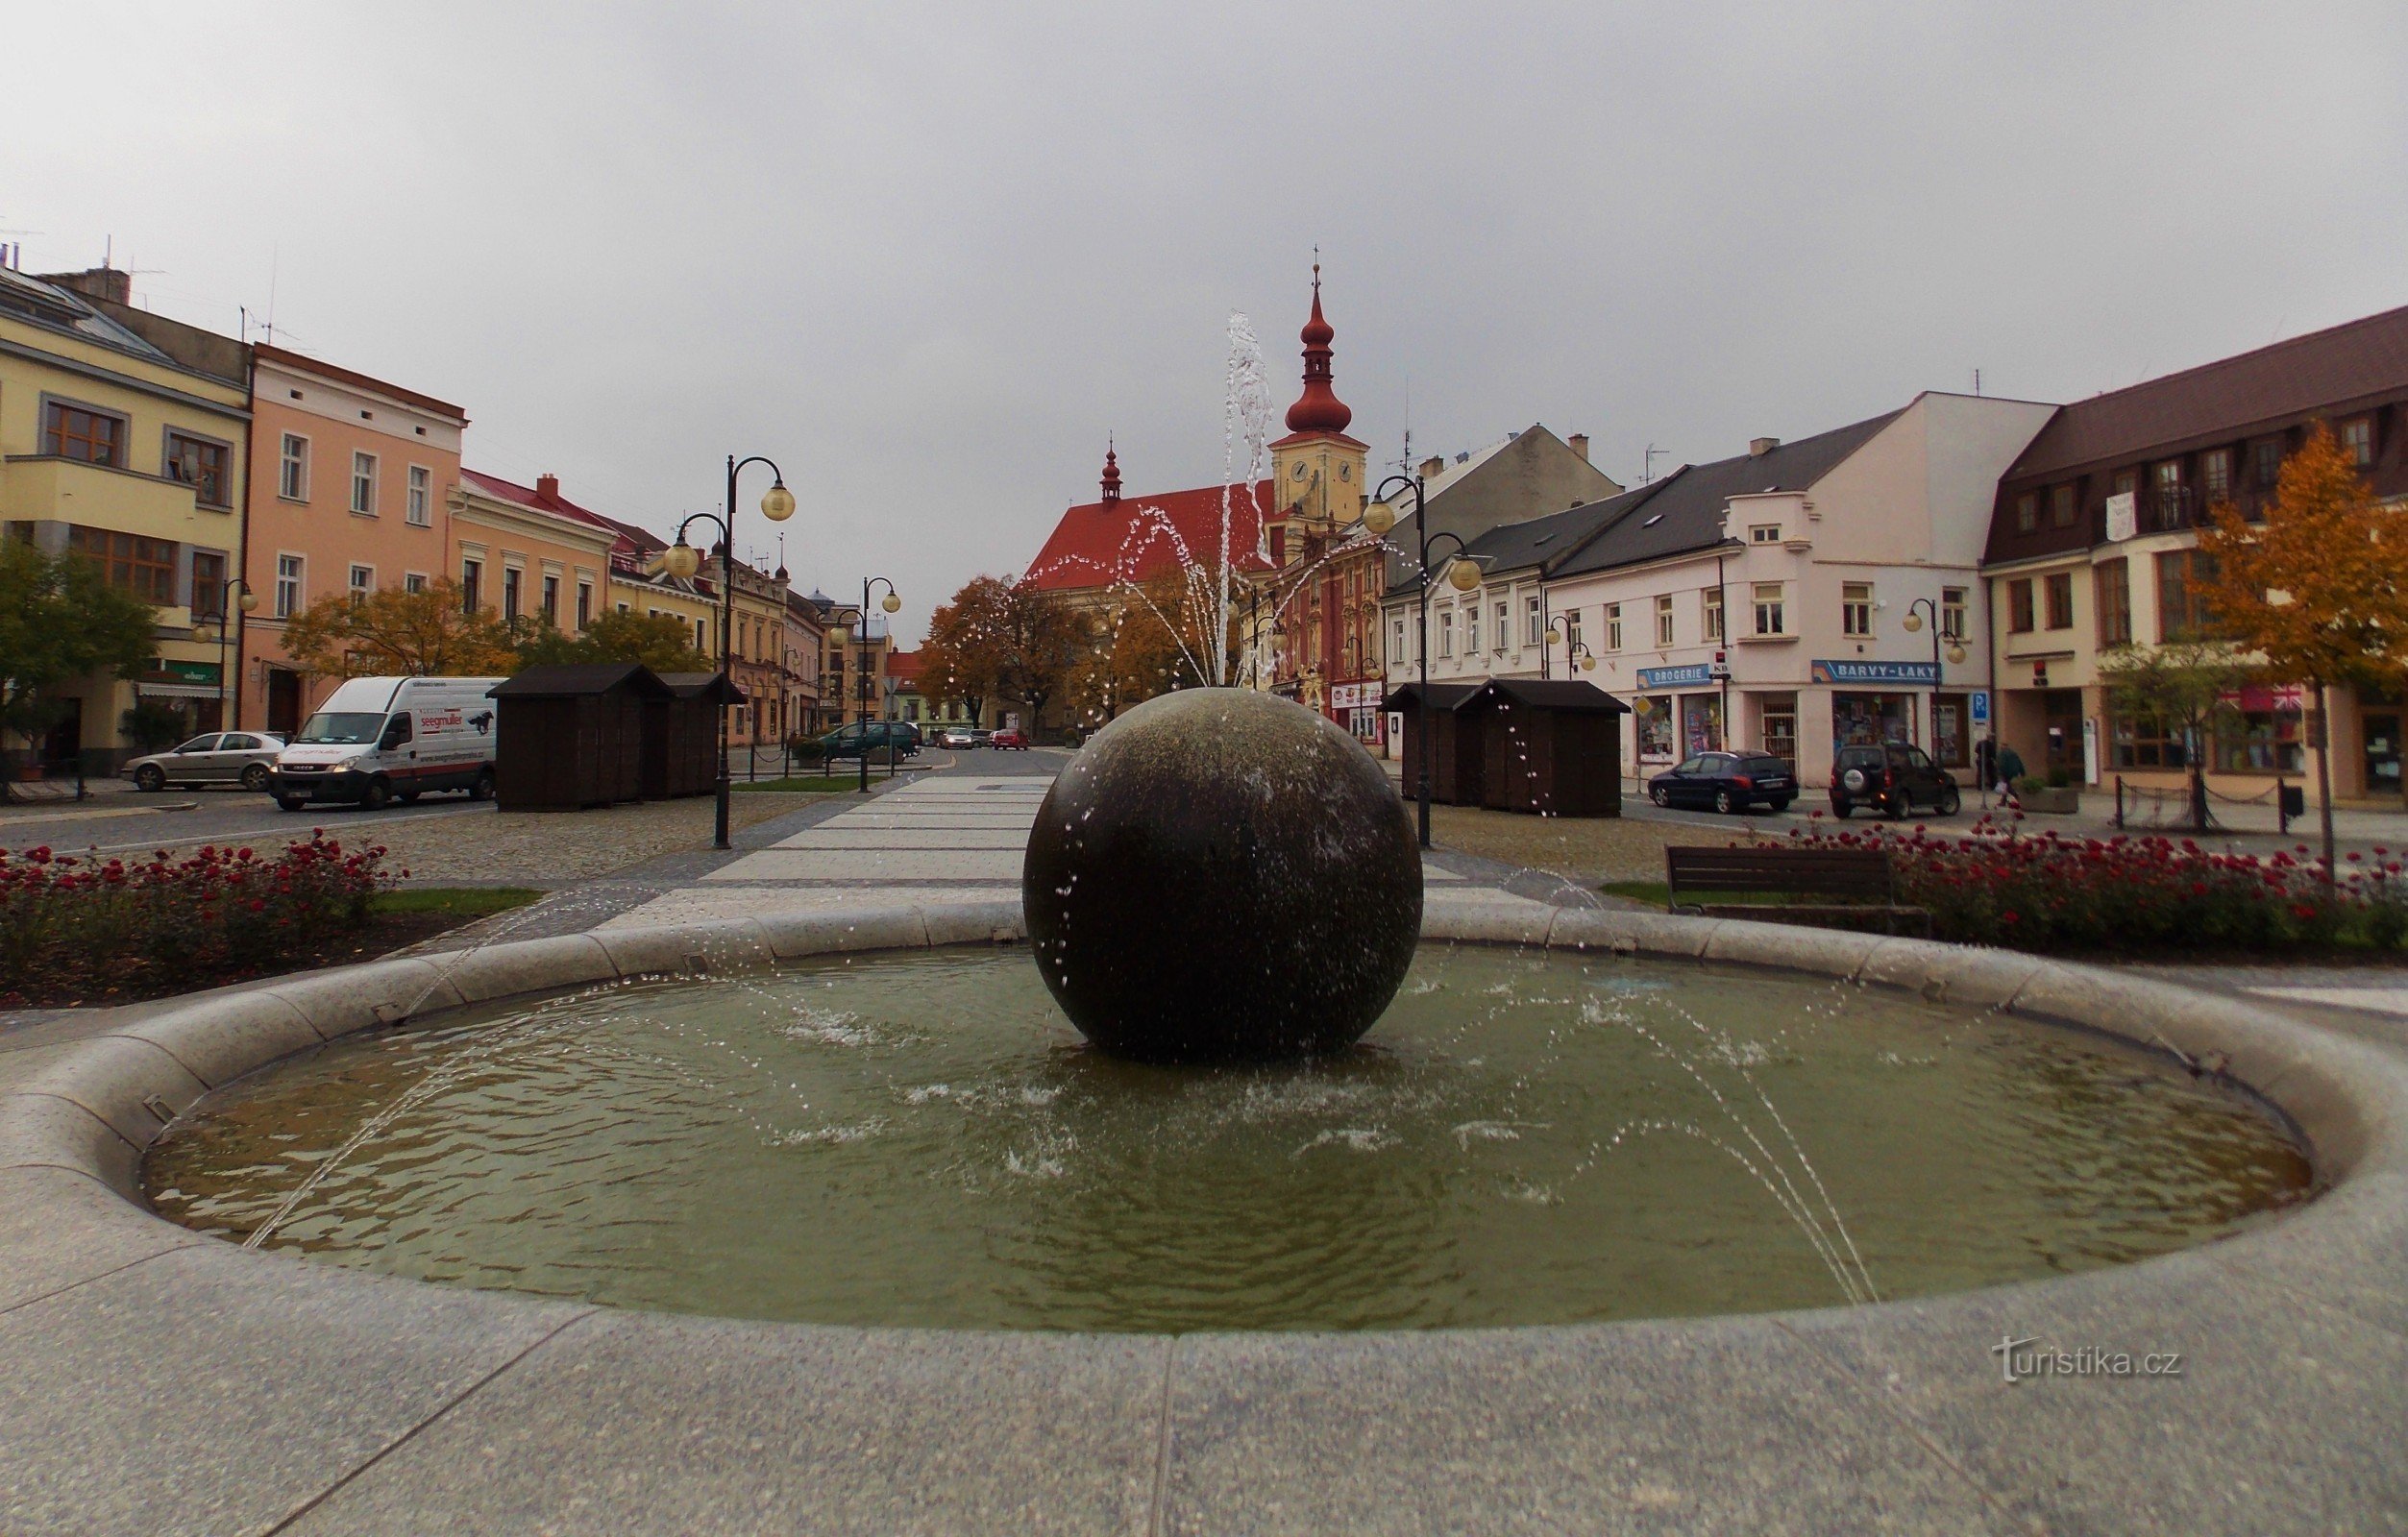 La caratteristica dominante di Holešovský náměstí è la fontana circolare